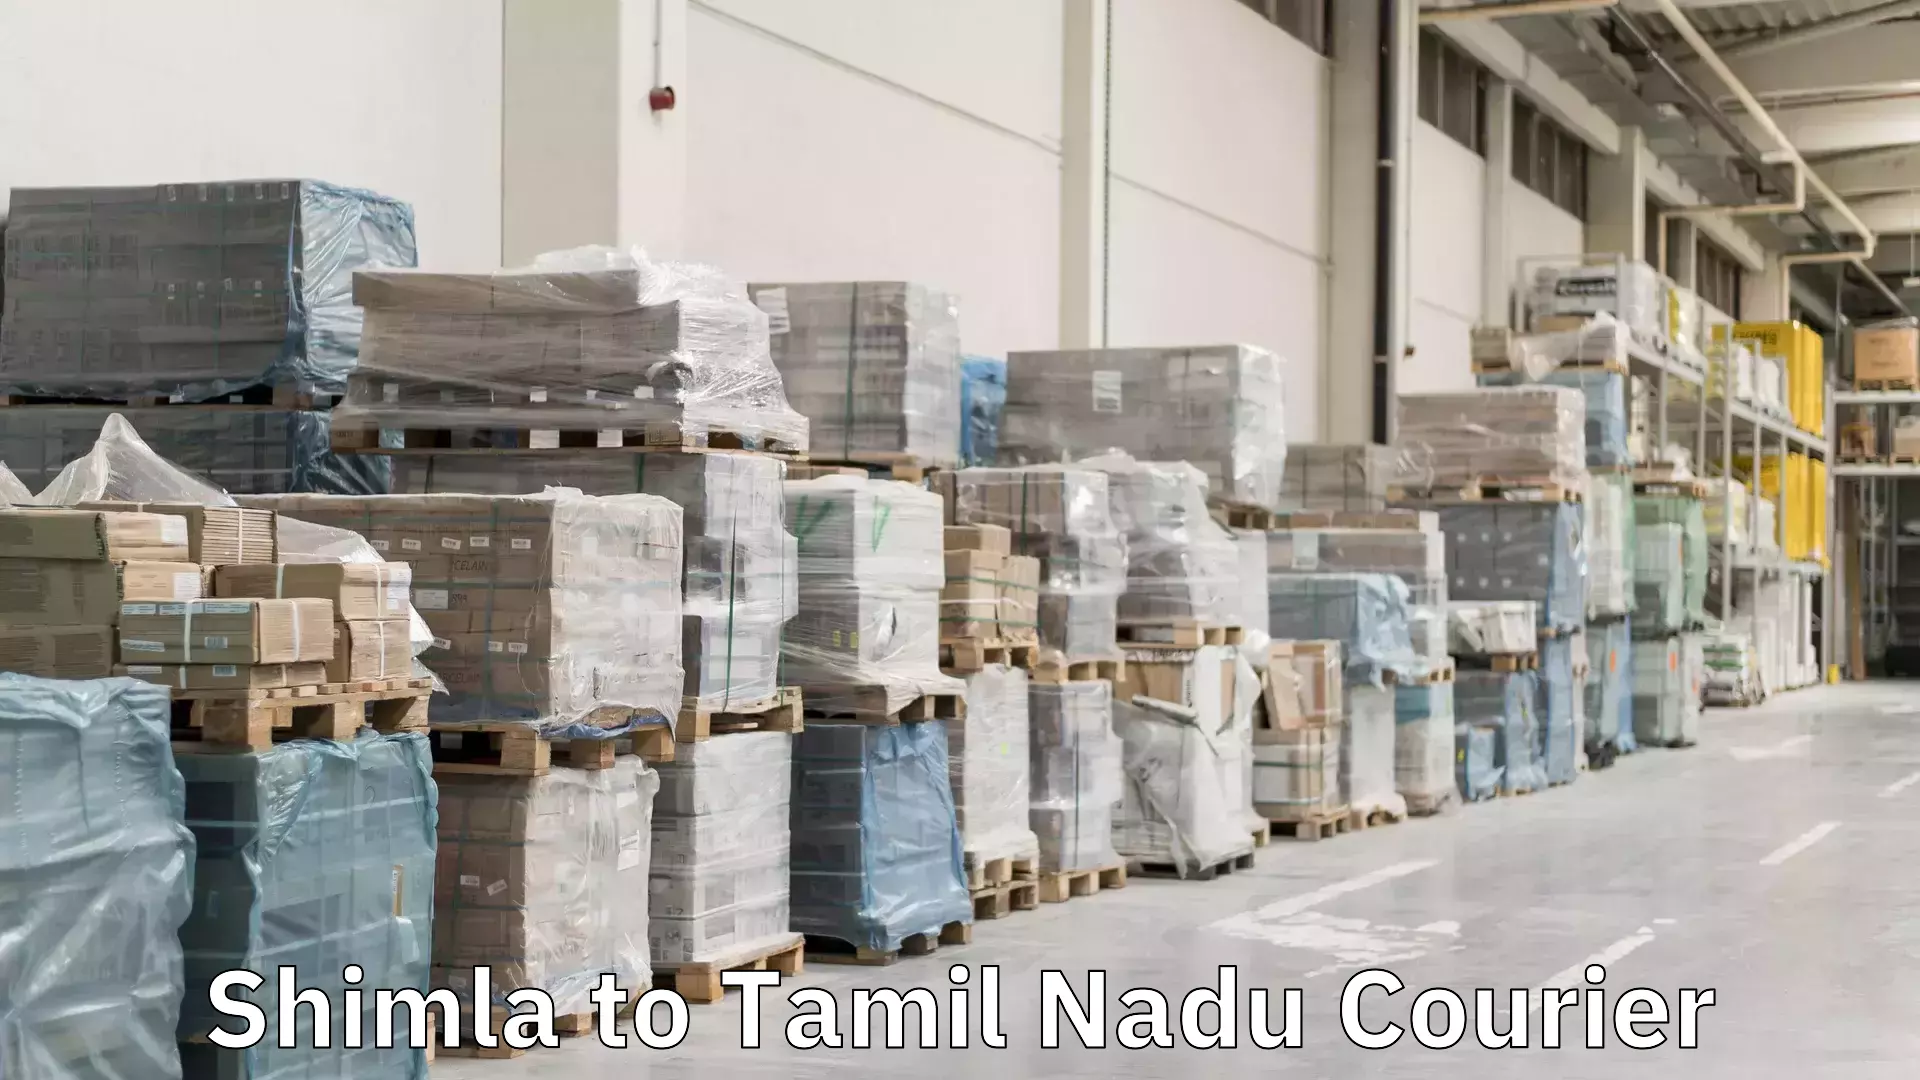 Express logistics in Shimla to Tamil Nadu